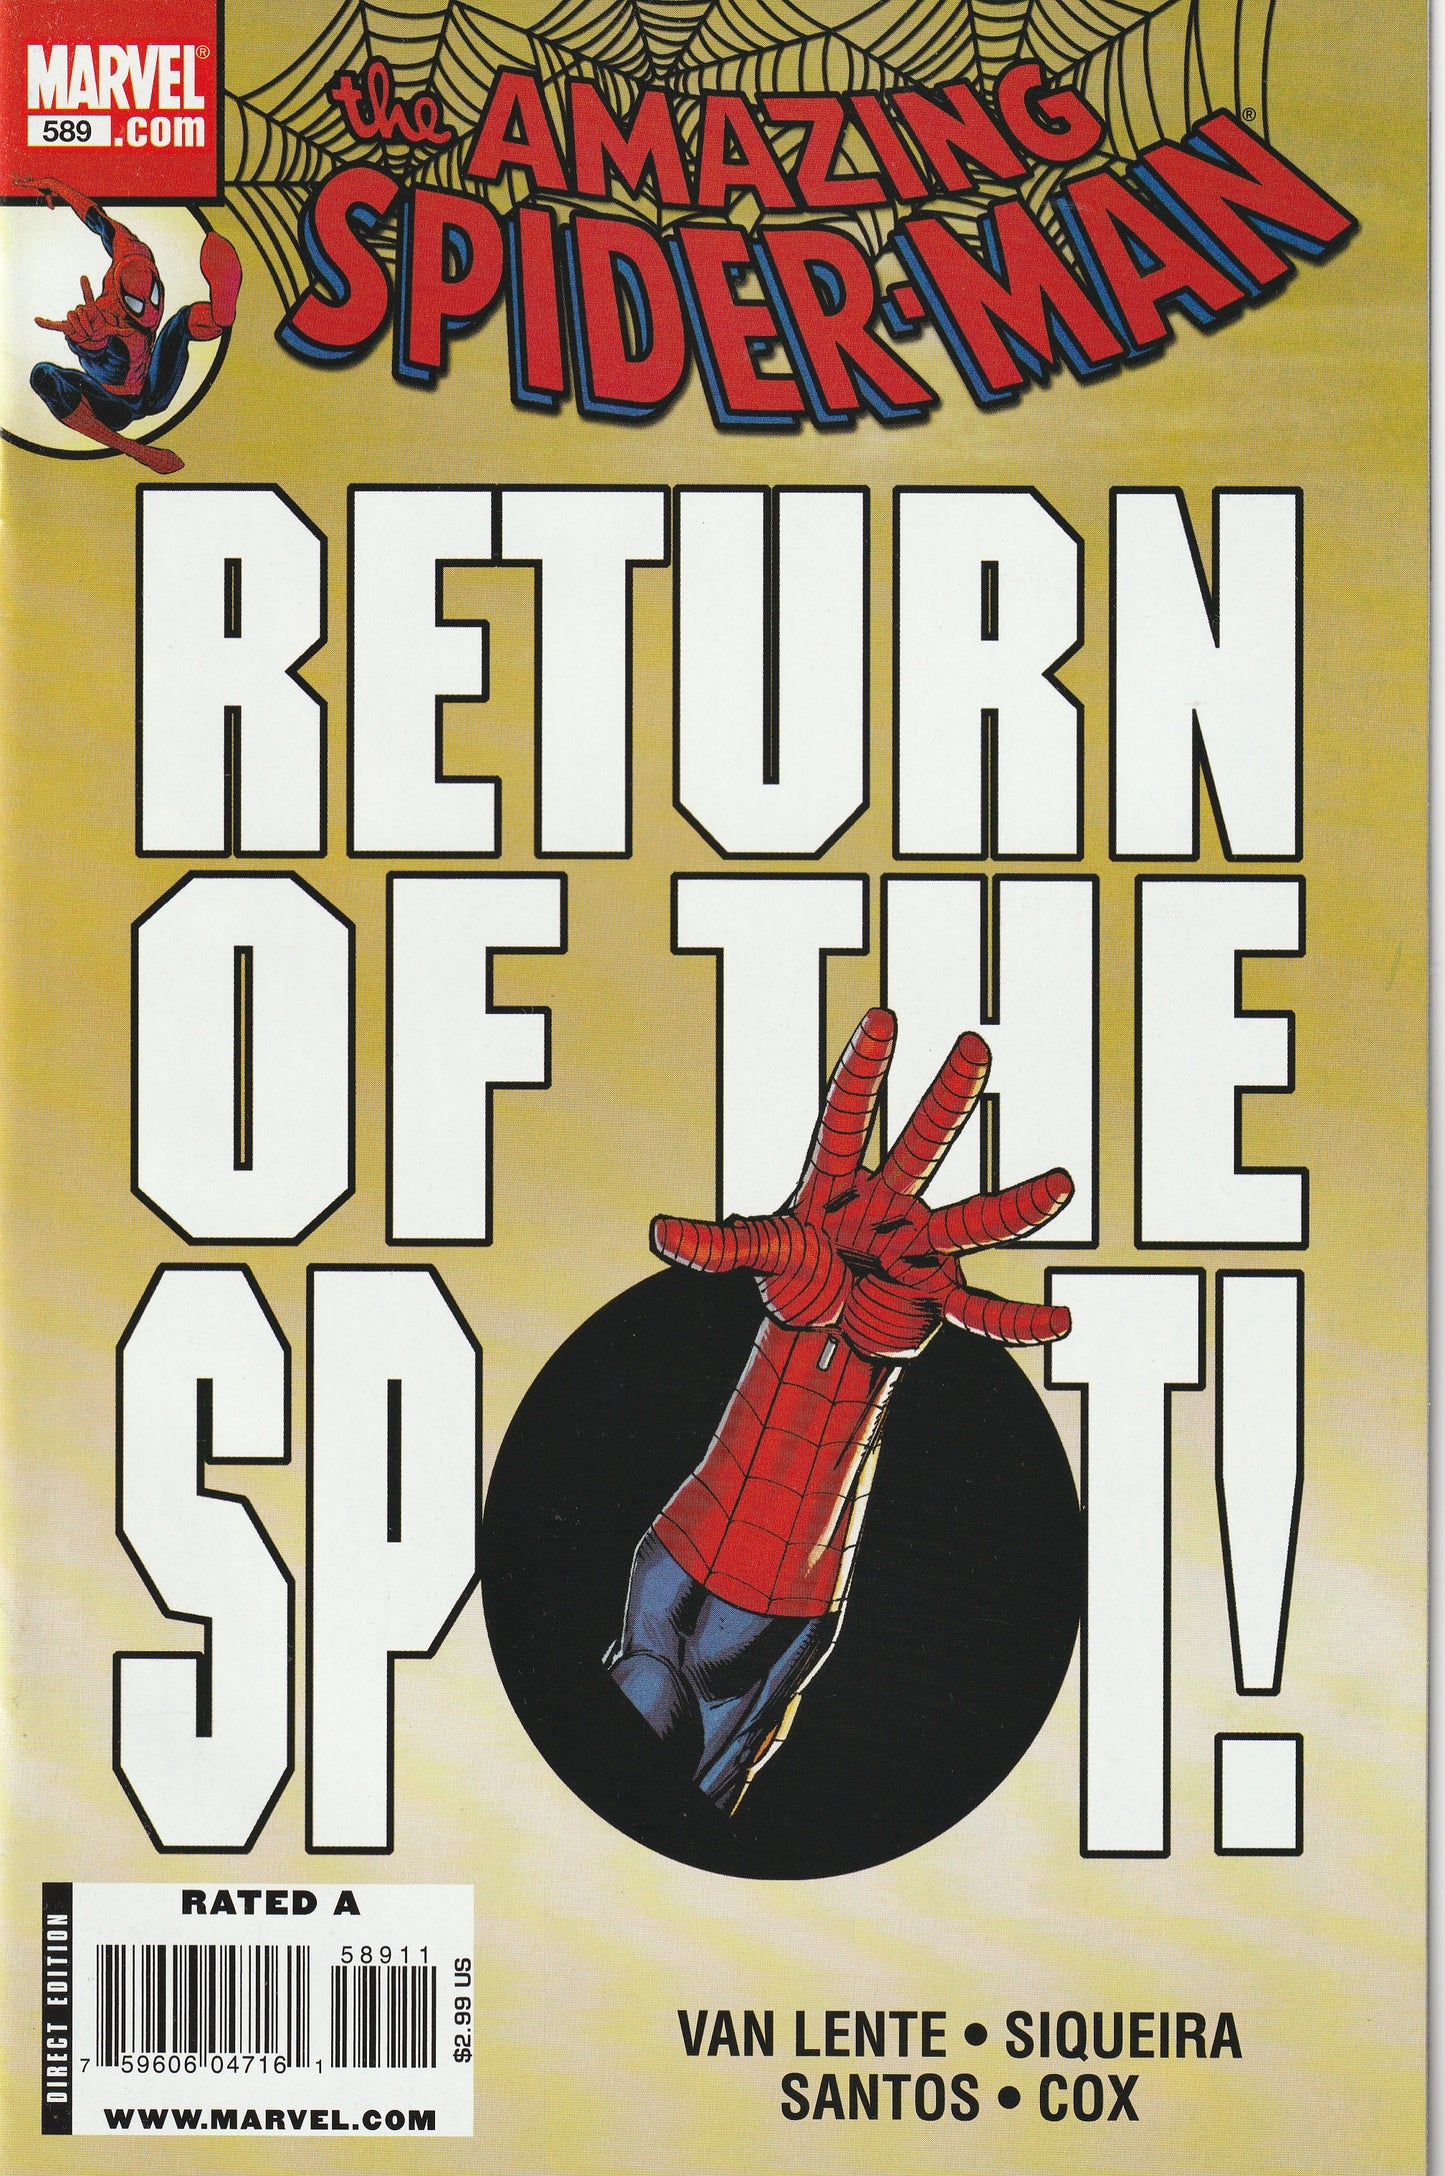 Amazing Spider-Man #589 (2009)